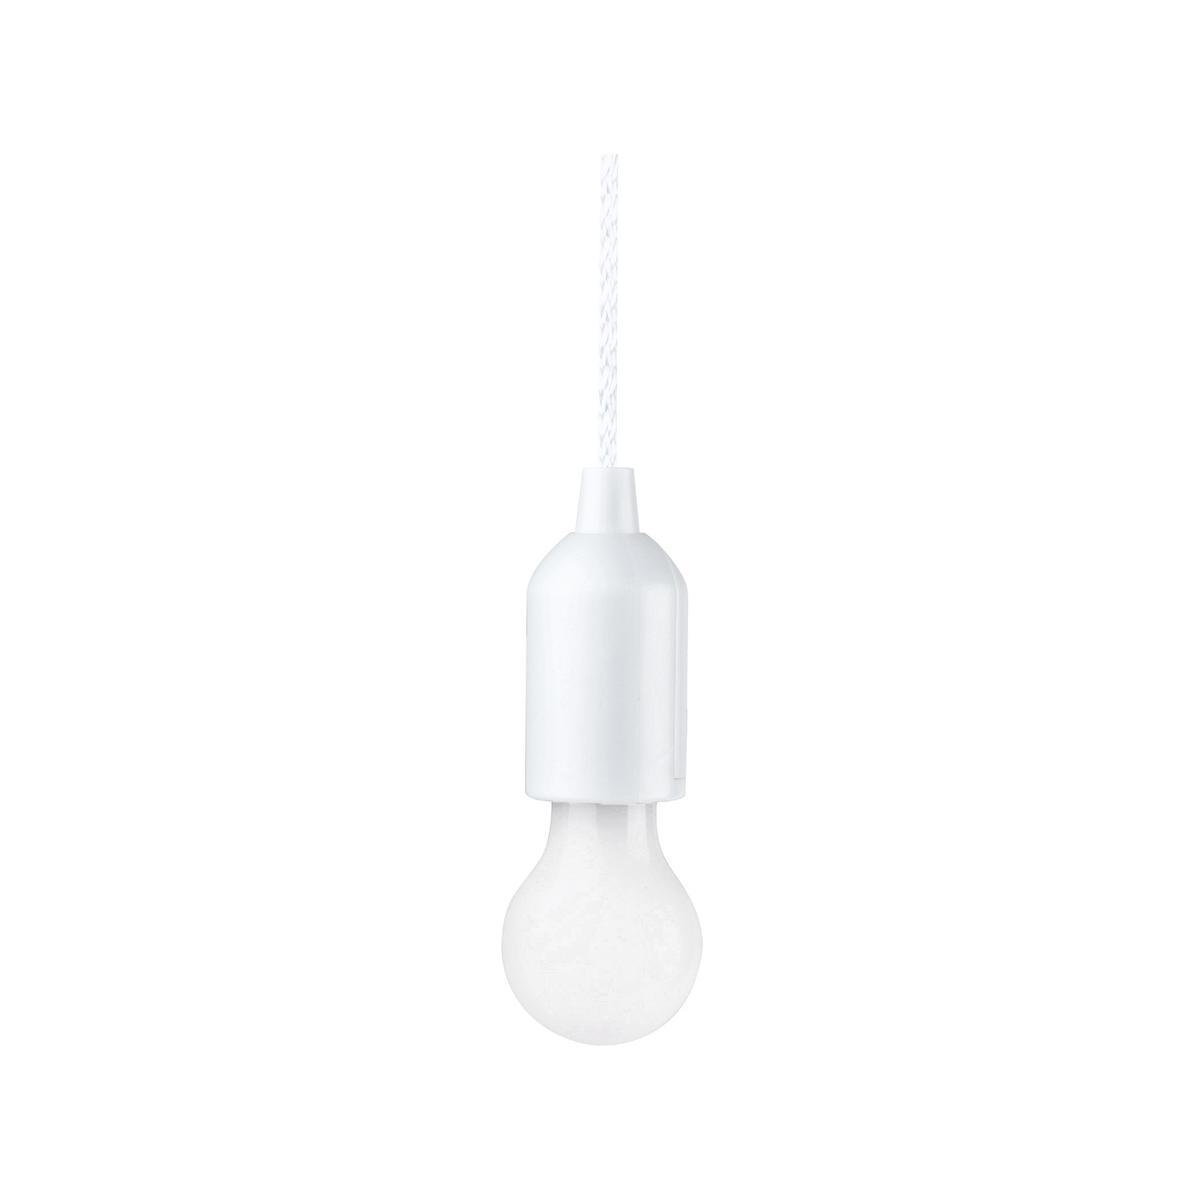 Suspension lampe fil nomade - ABS et Polycarbonate - 16,5 x 5,5 cm / Câble 108 cm - Blanc